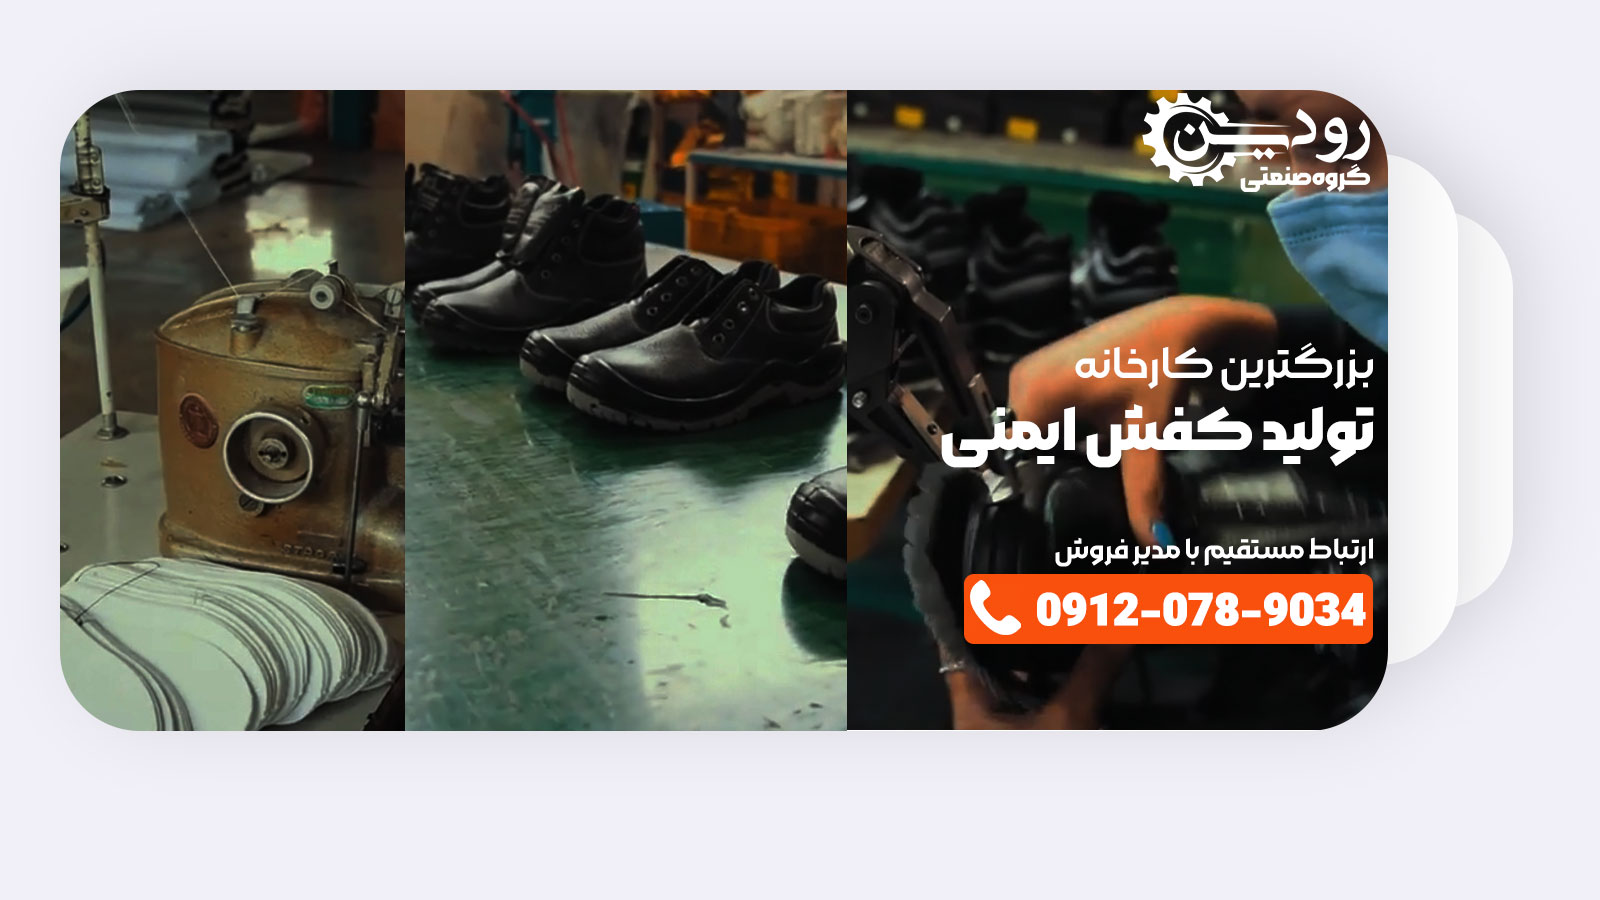 بزرگترین کارخانه تولید کفش ایمنی در کشور ایران در خدمت شماست تا خرید خود را انجام دهید.